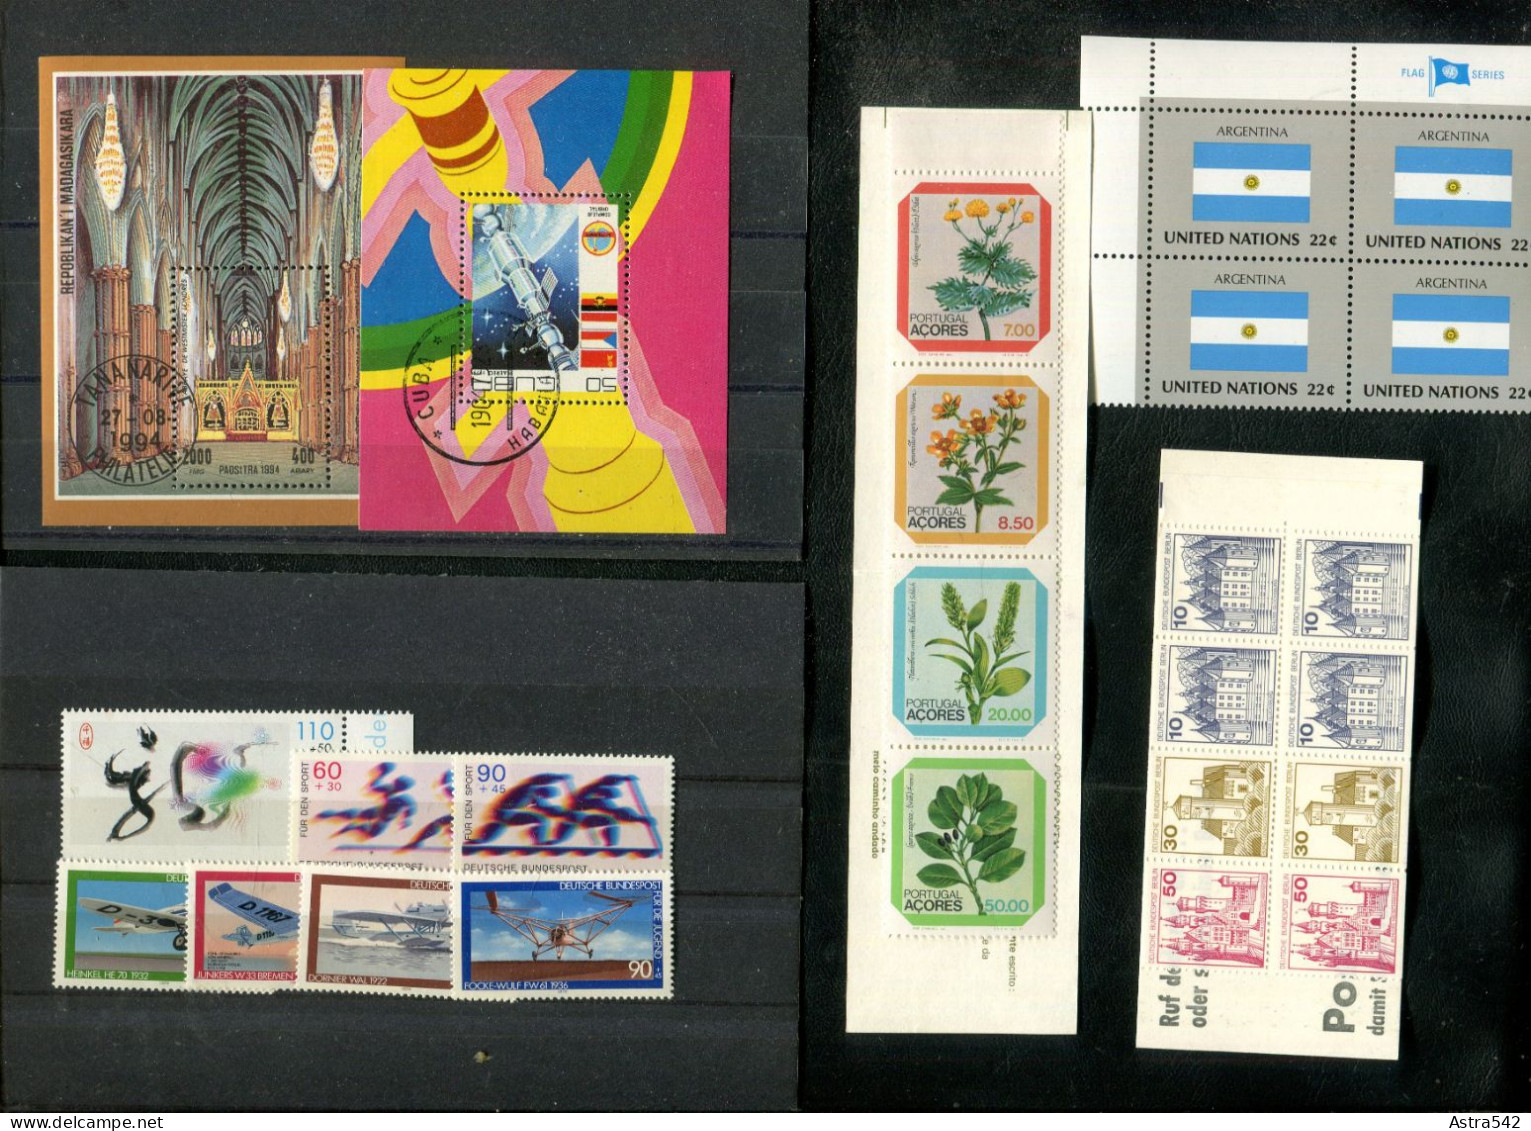 "WELTWEIT" Int. Posten "Diverses", Vgl. Fotos (A1110) - Lots & Kiloware (mixtures) - Max. 999 Stamps